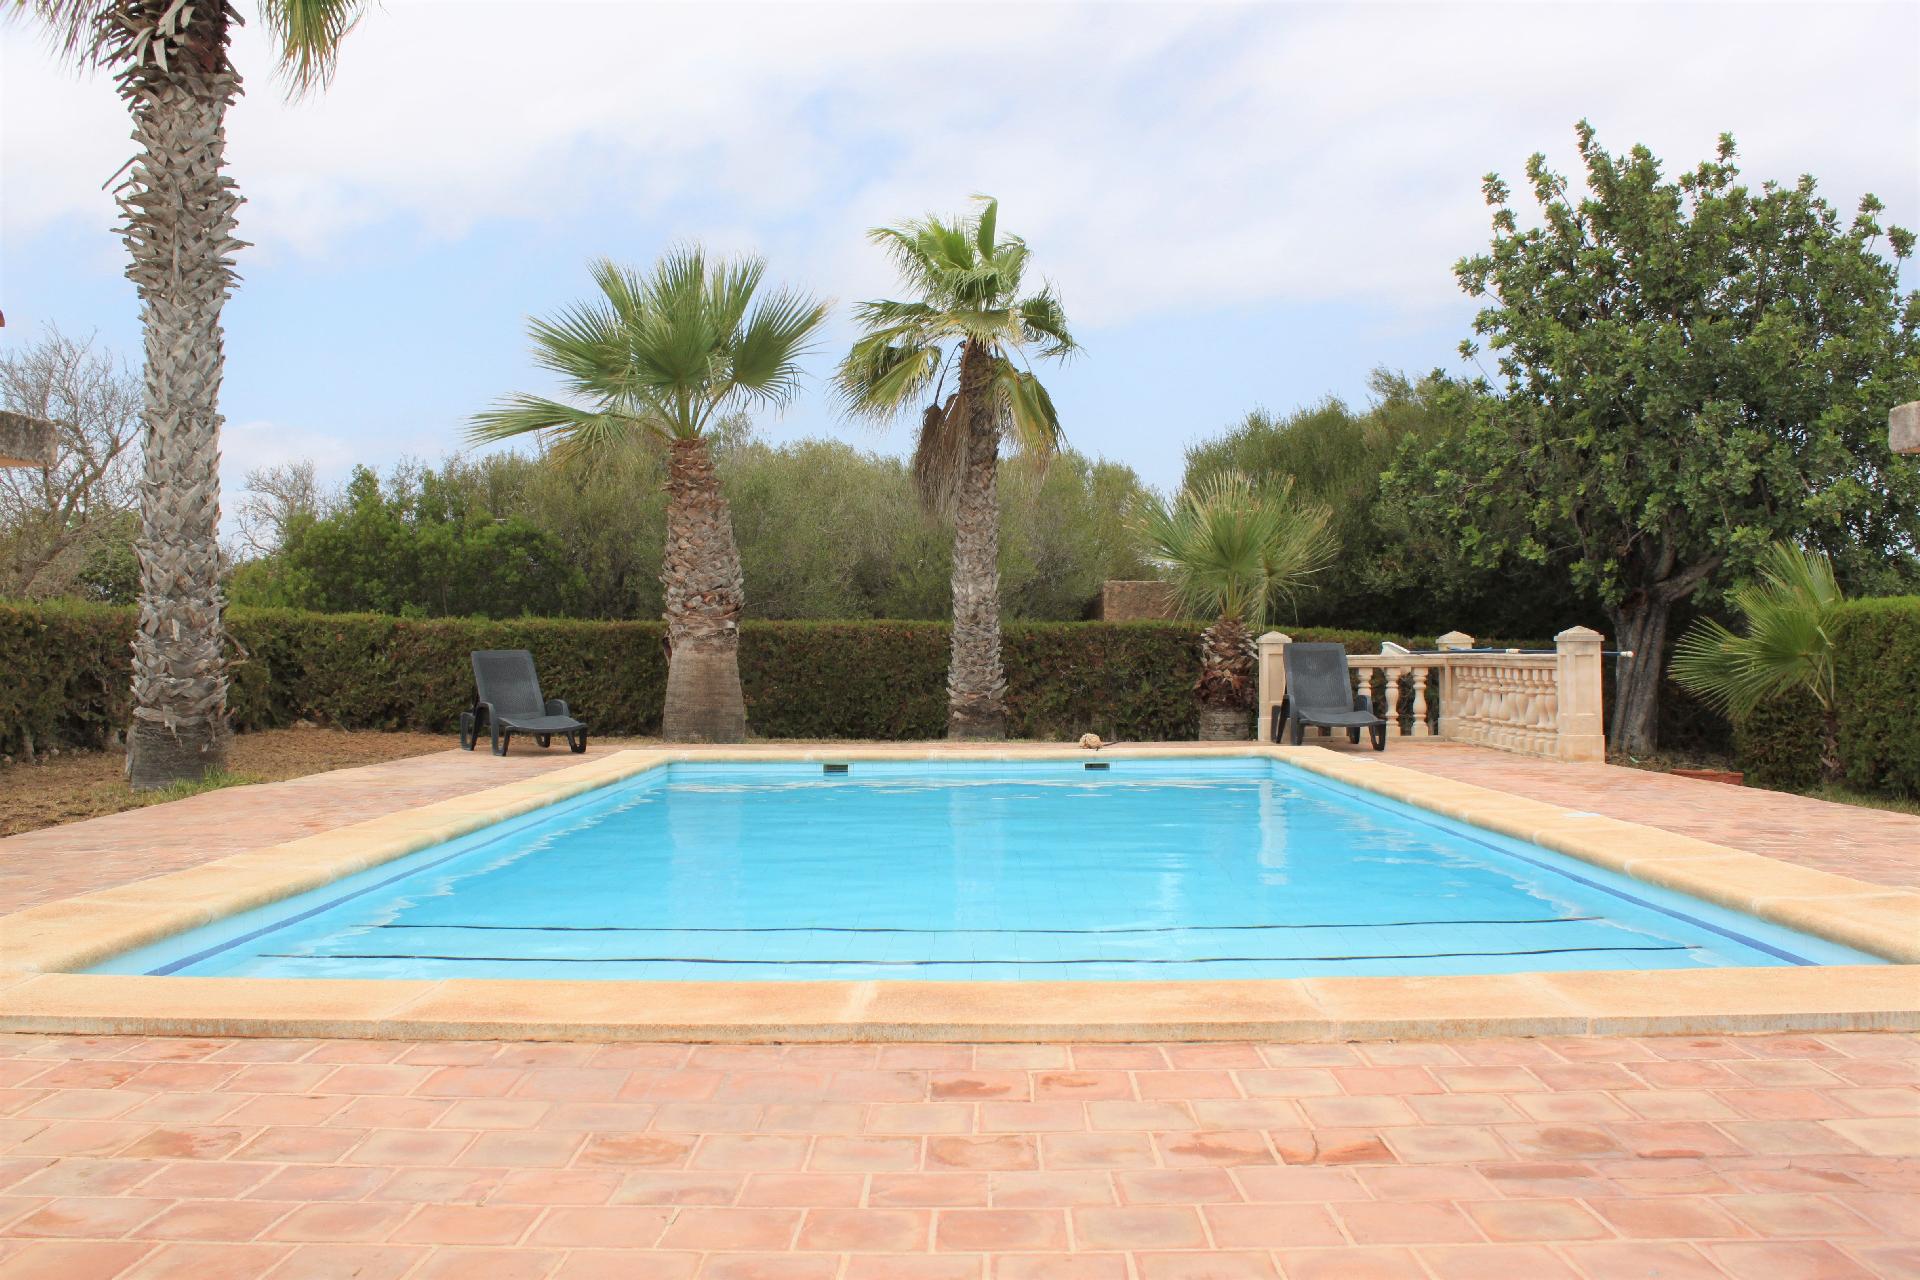 Schönes Ferienhaus mit Pool, Terrasse und Gar Ferienhaus in Spanien